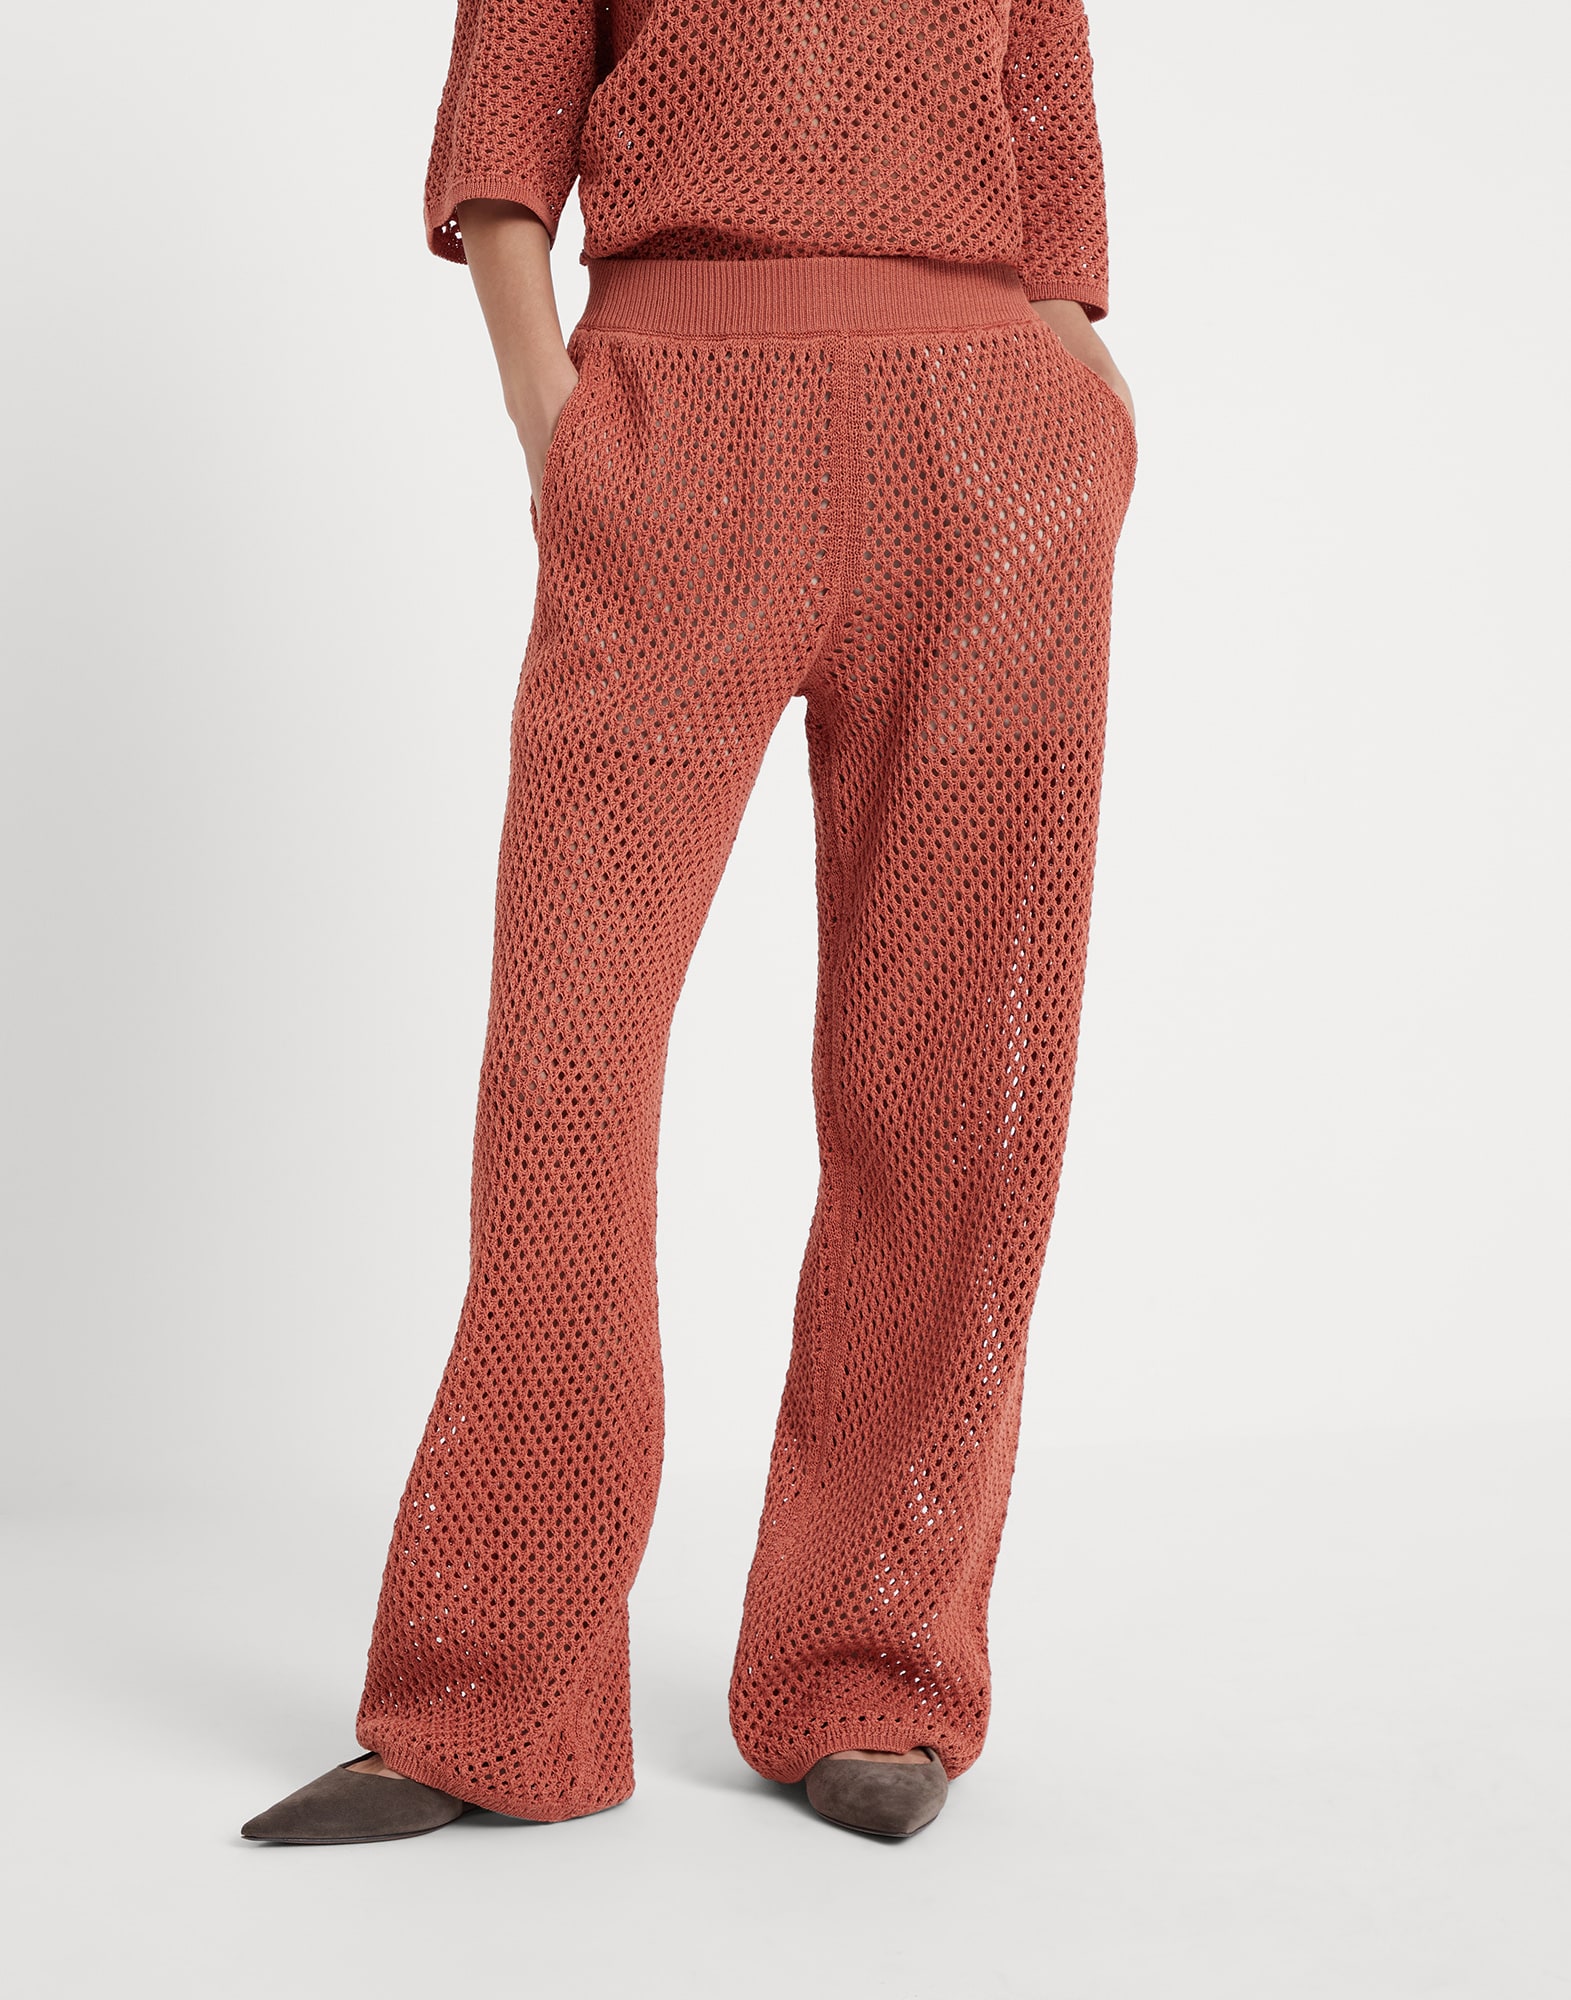 Net knit trousers